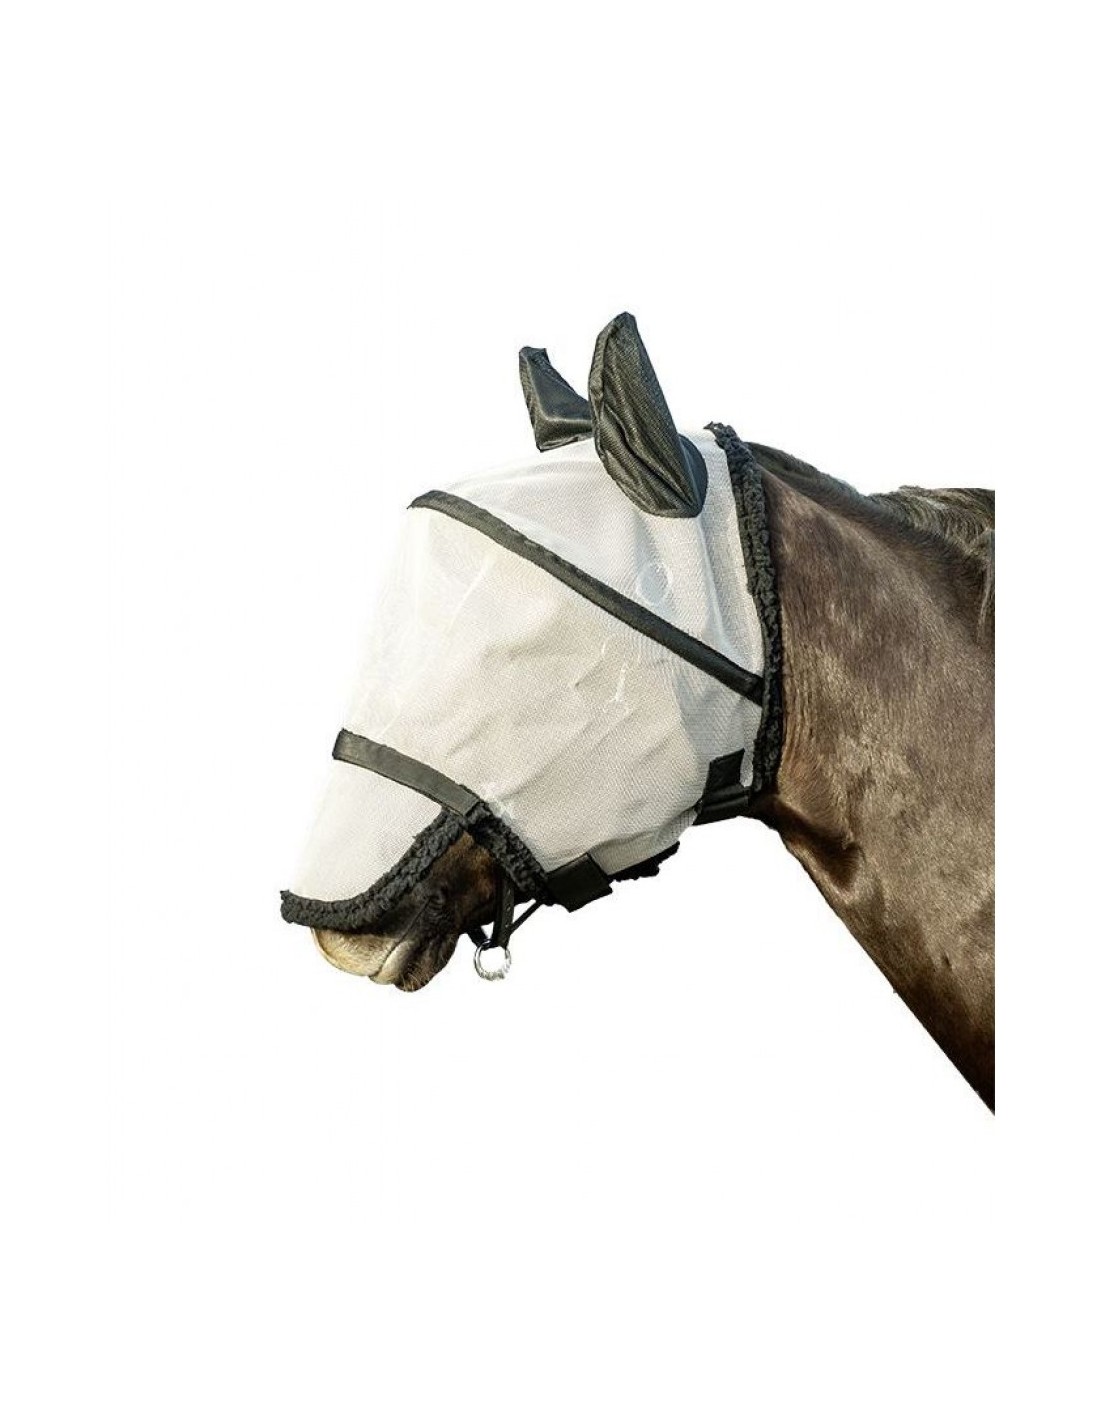 Máscara antimoscas HKM con protección nariz - Pferde